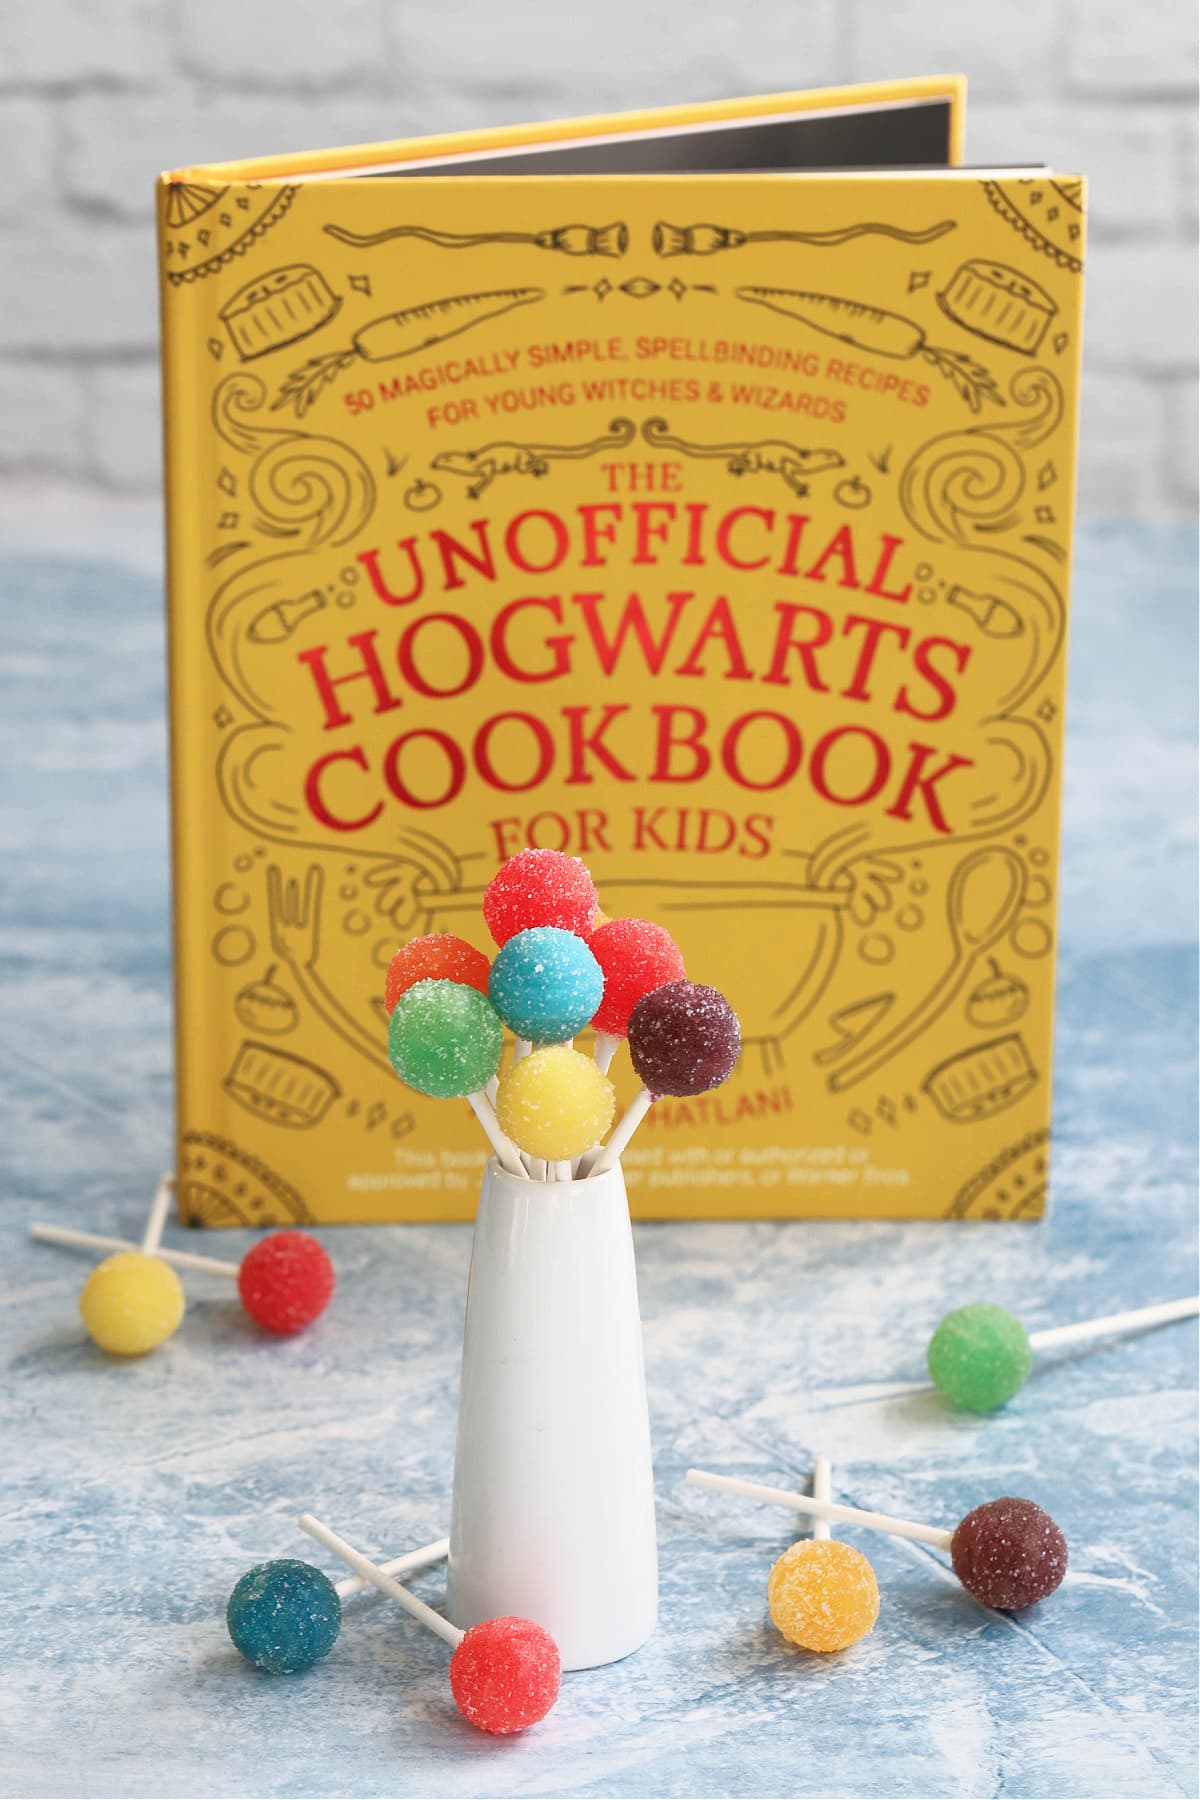 Harry Potter cookbook with acid pops